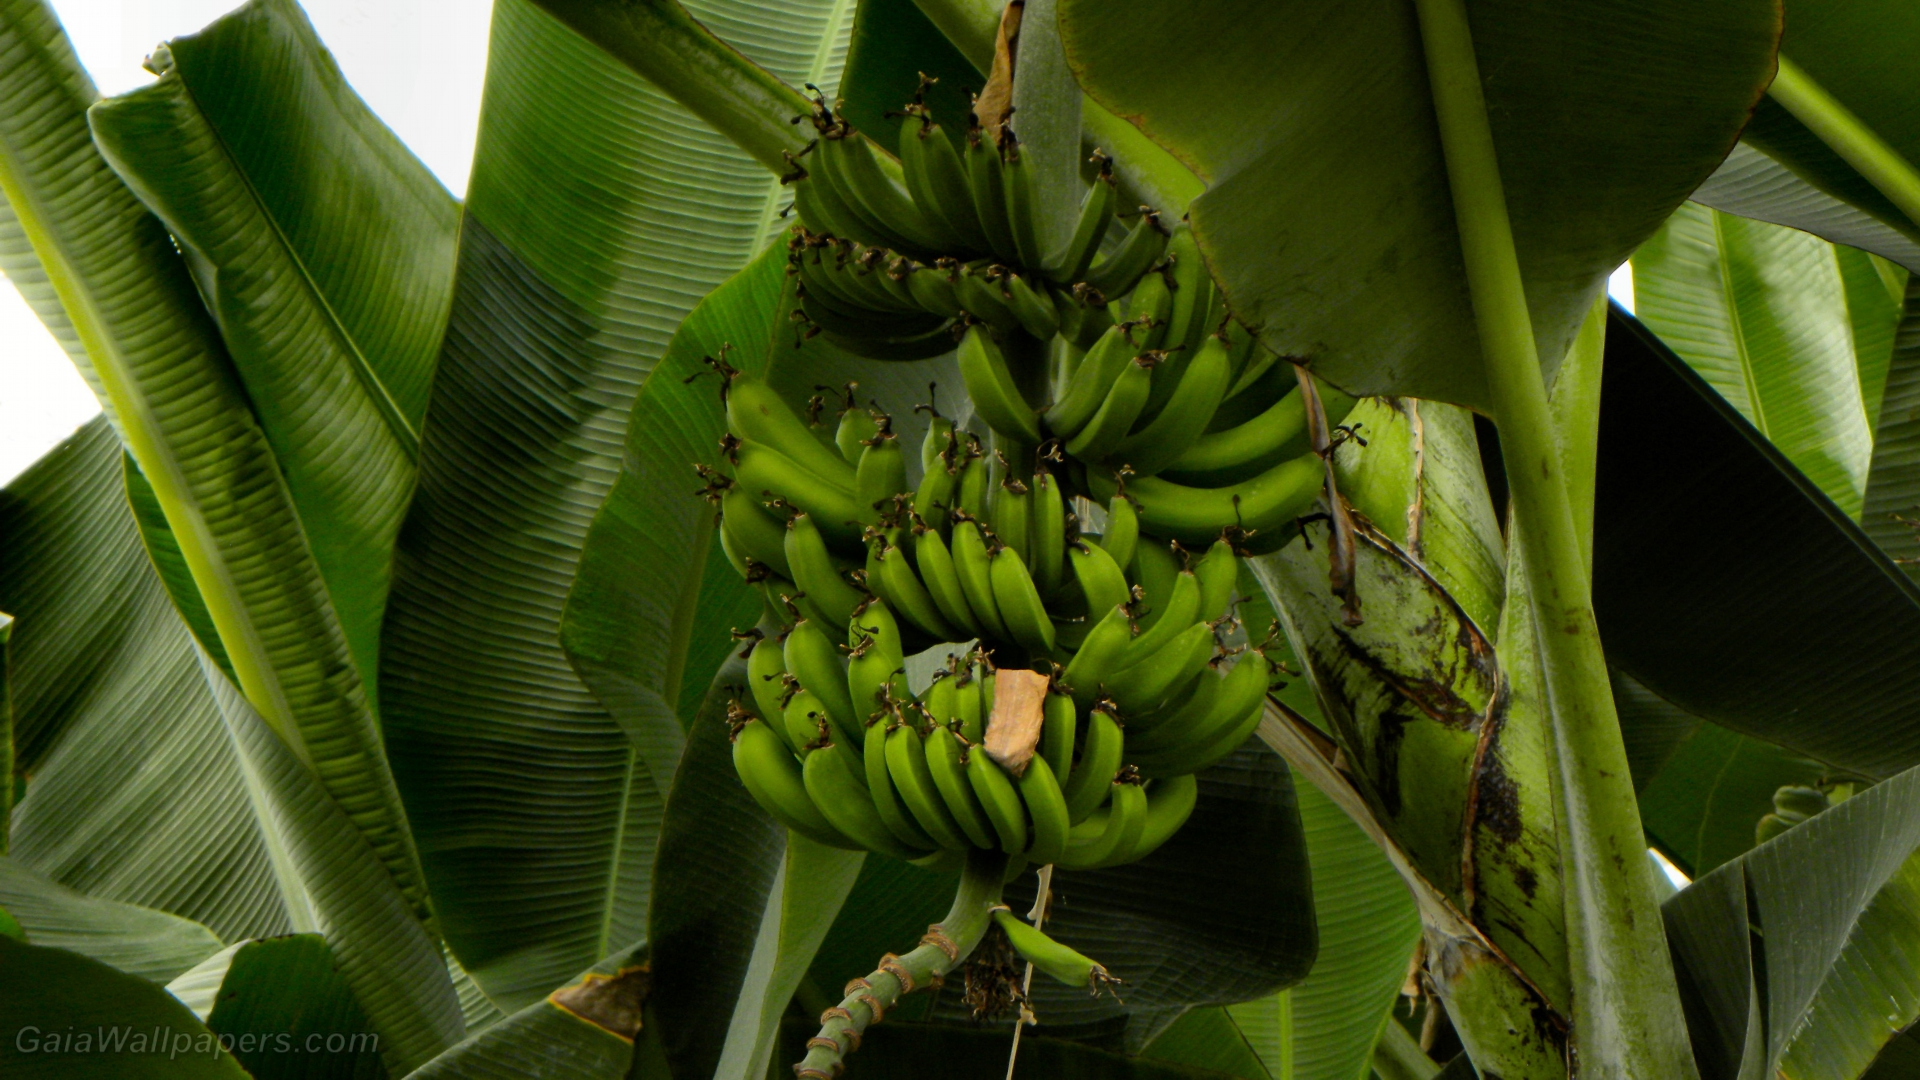 Green Bananas In A Banana Tree - Saba Banana , HD Wallpaper & Backgrounds